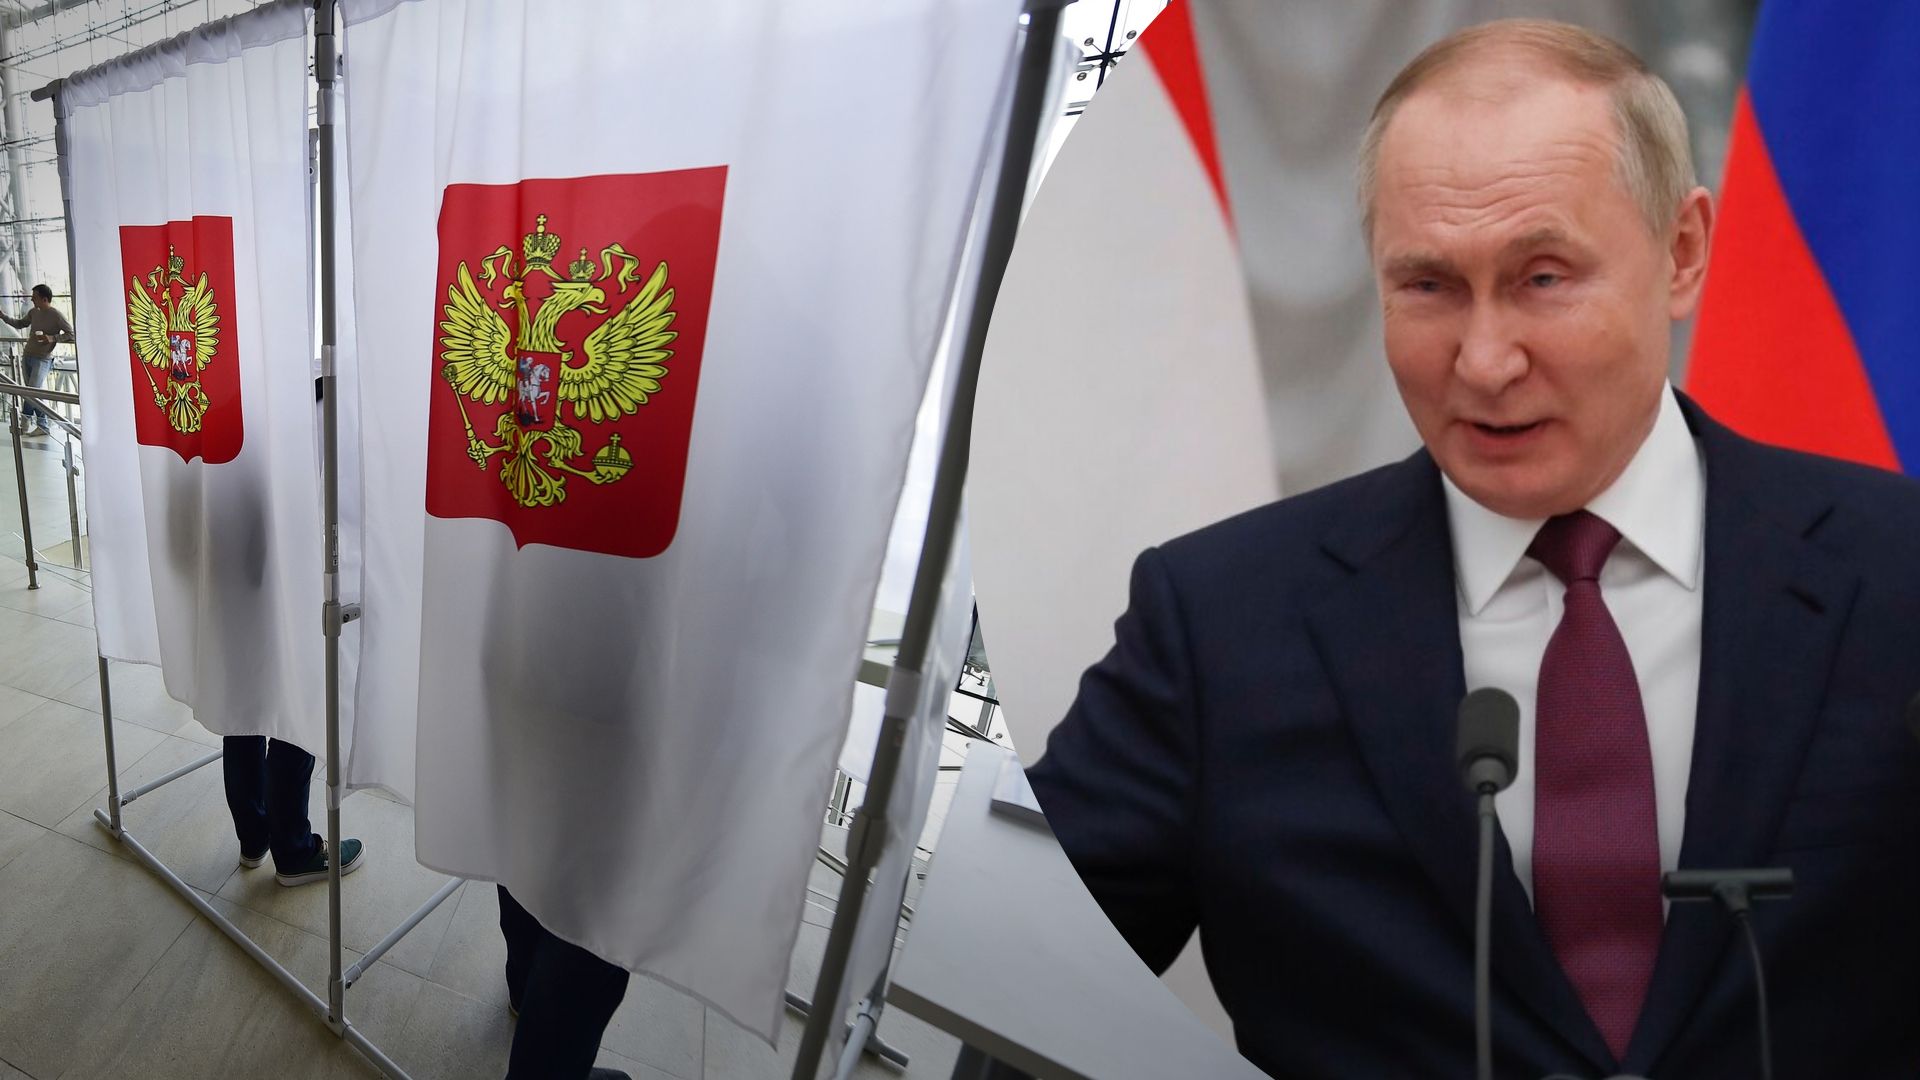 Выборы президента России 2024 года - к чему готовятся в Кремле, какие цифры нарисуют Путину